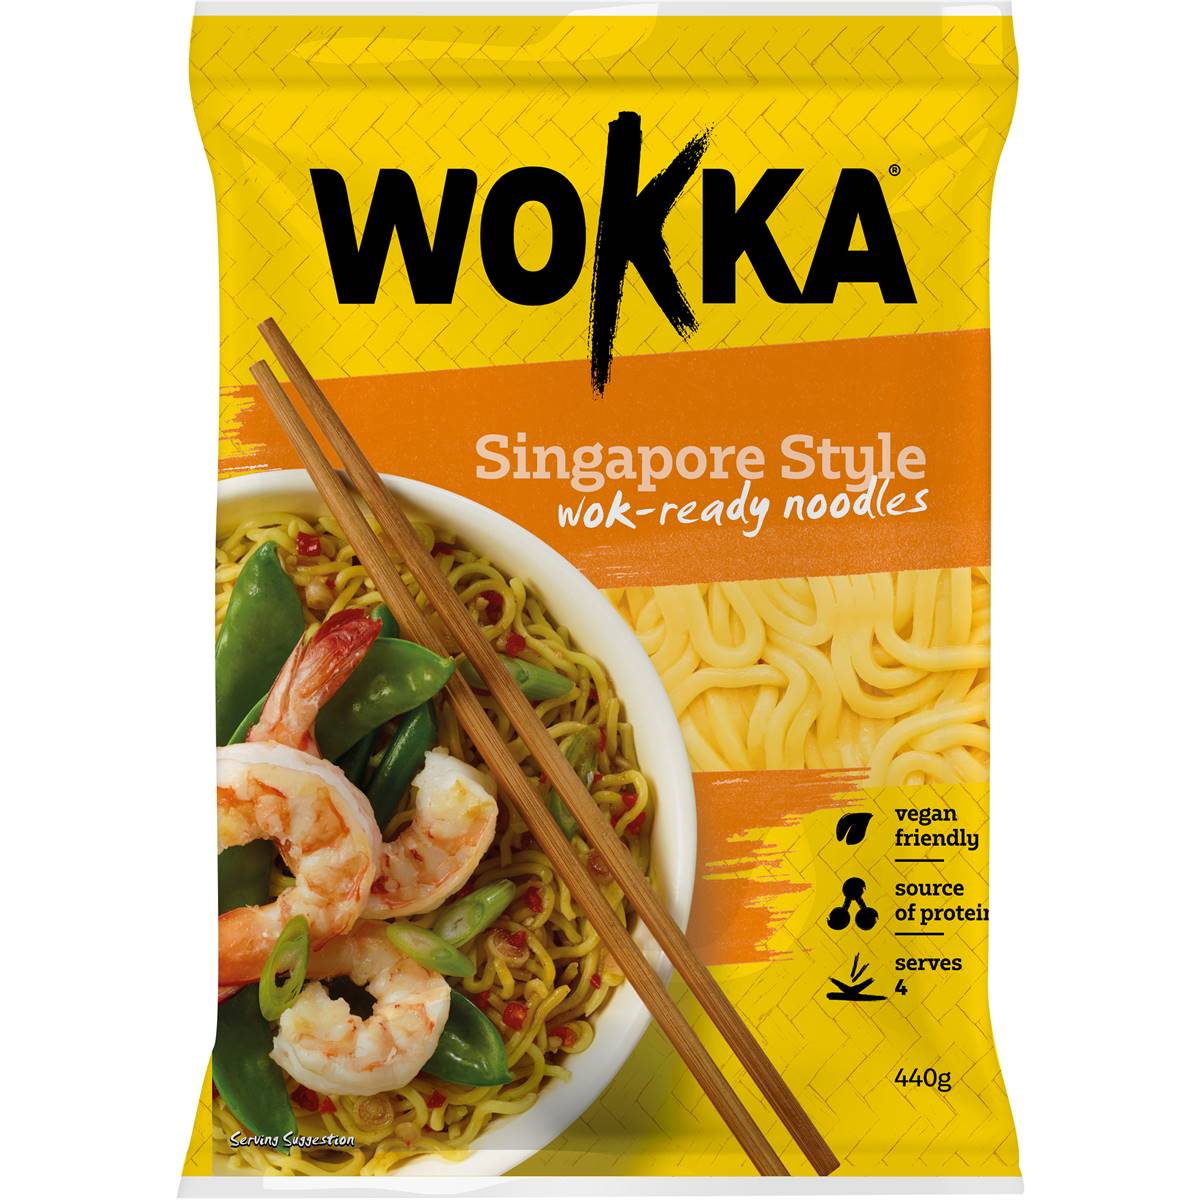 Wokka Singapore Style Noodles 440g